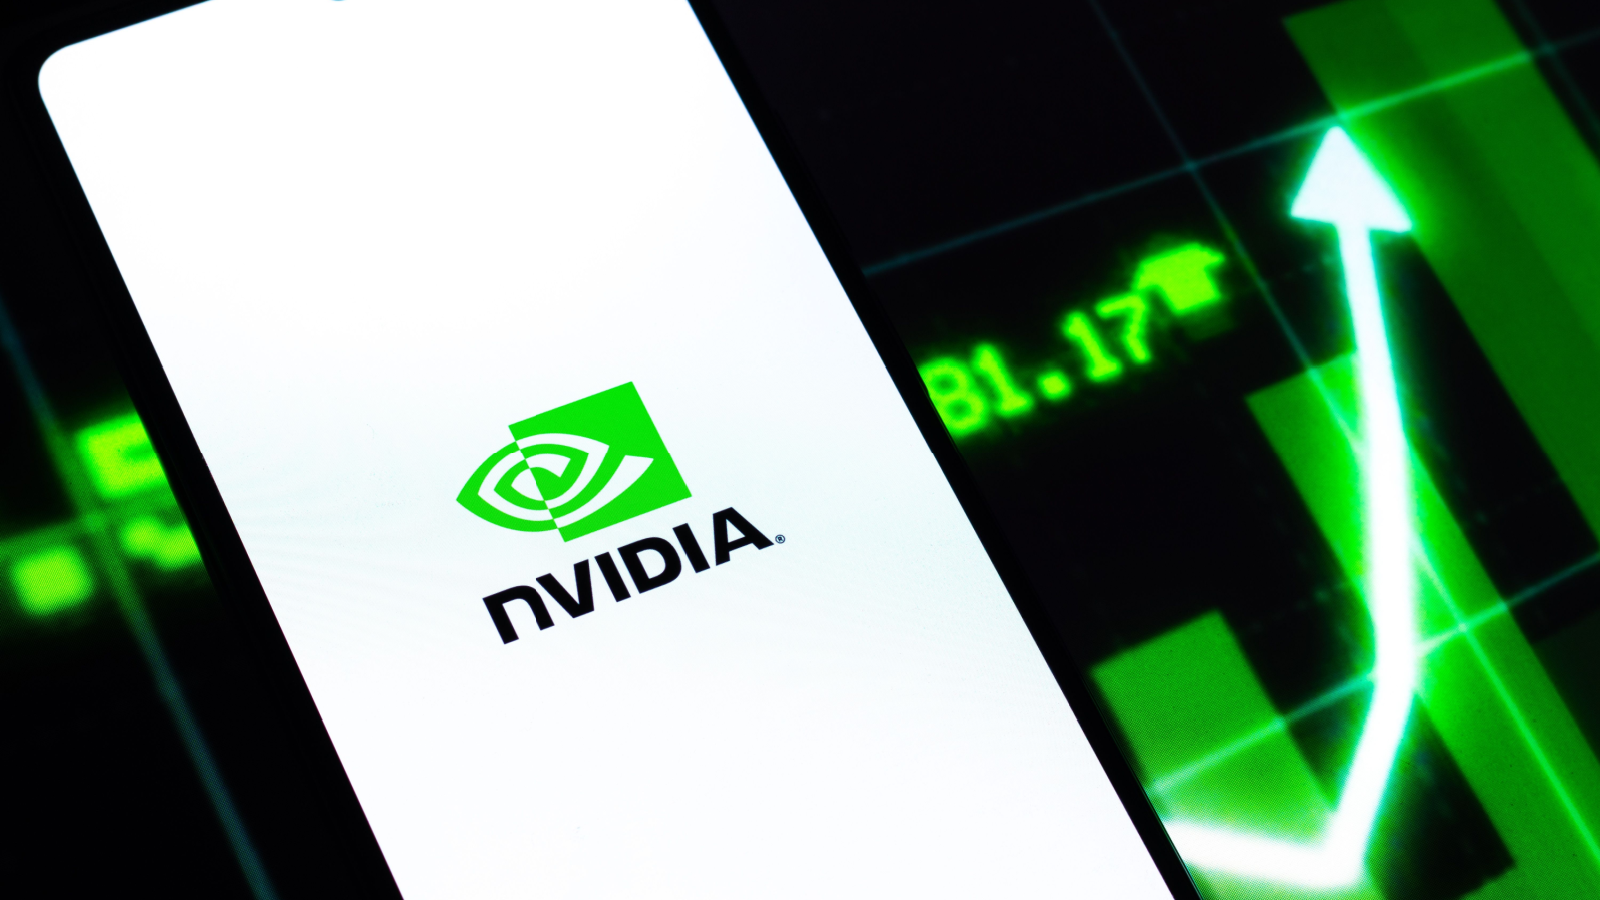 NVDA Stock Alert Nvidia Closes at New Record High InvestorPlace